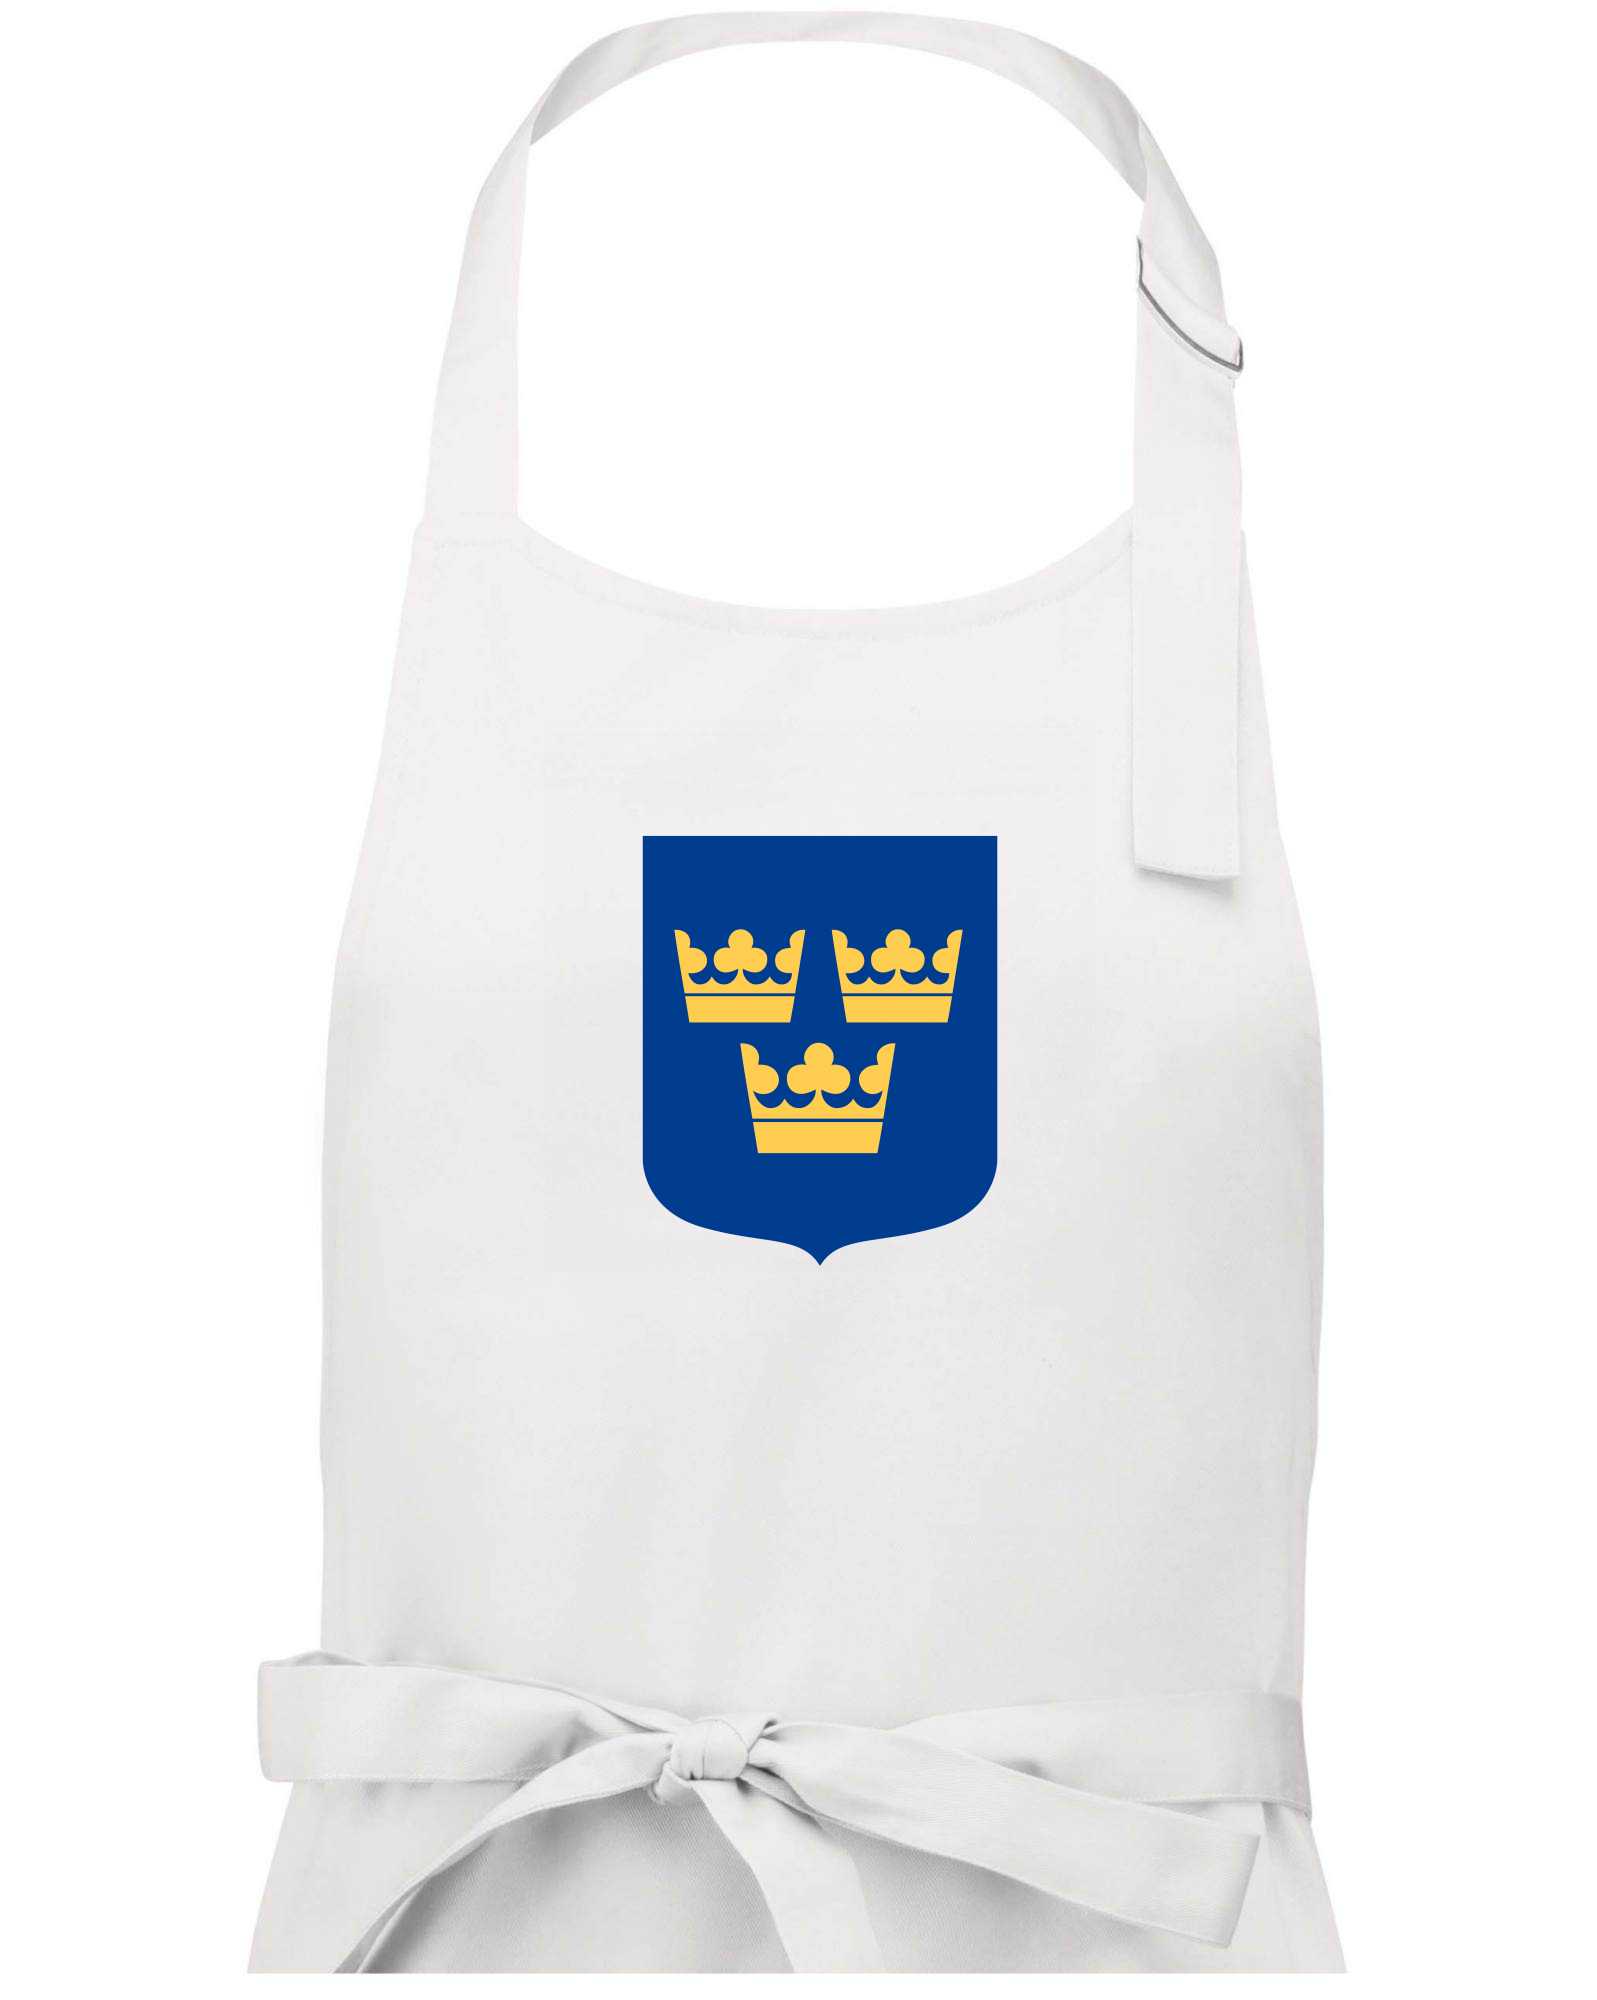 Švédský znak tři korunky velký - Zástěra na vaření